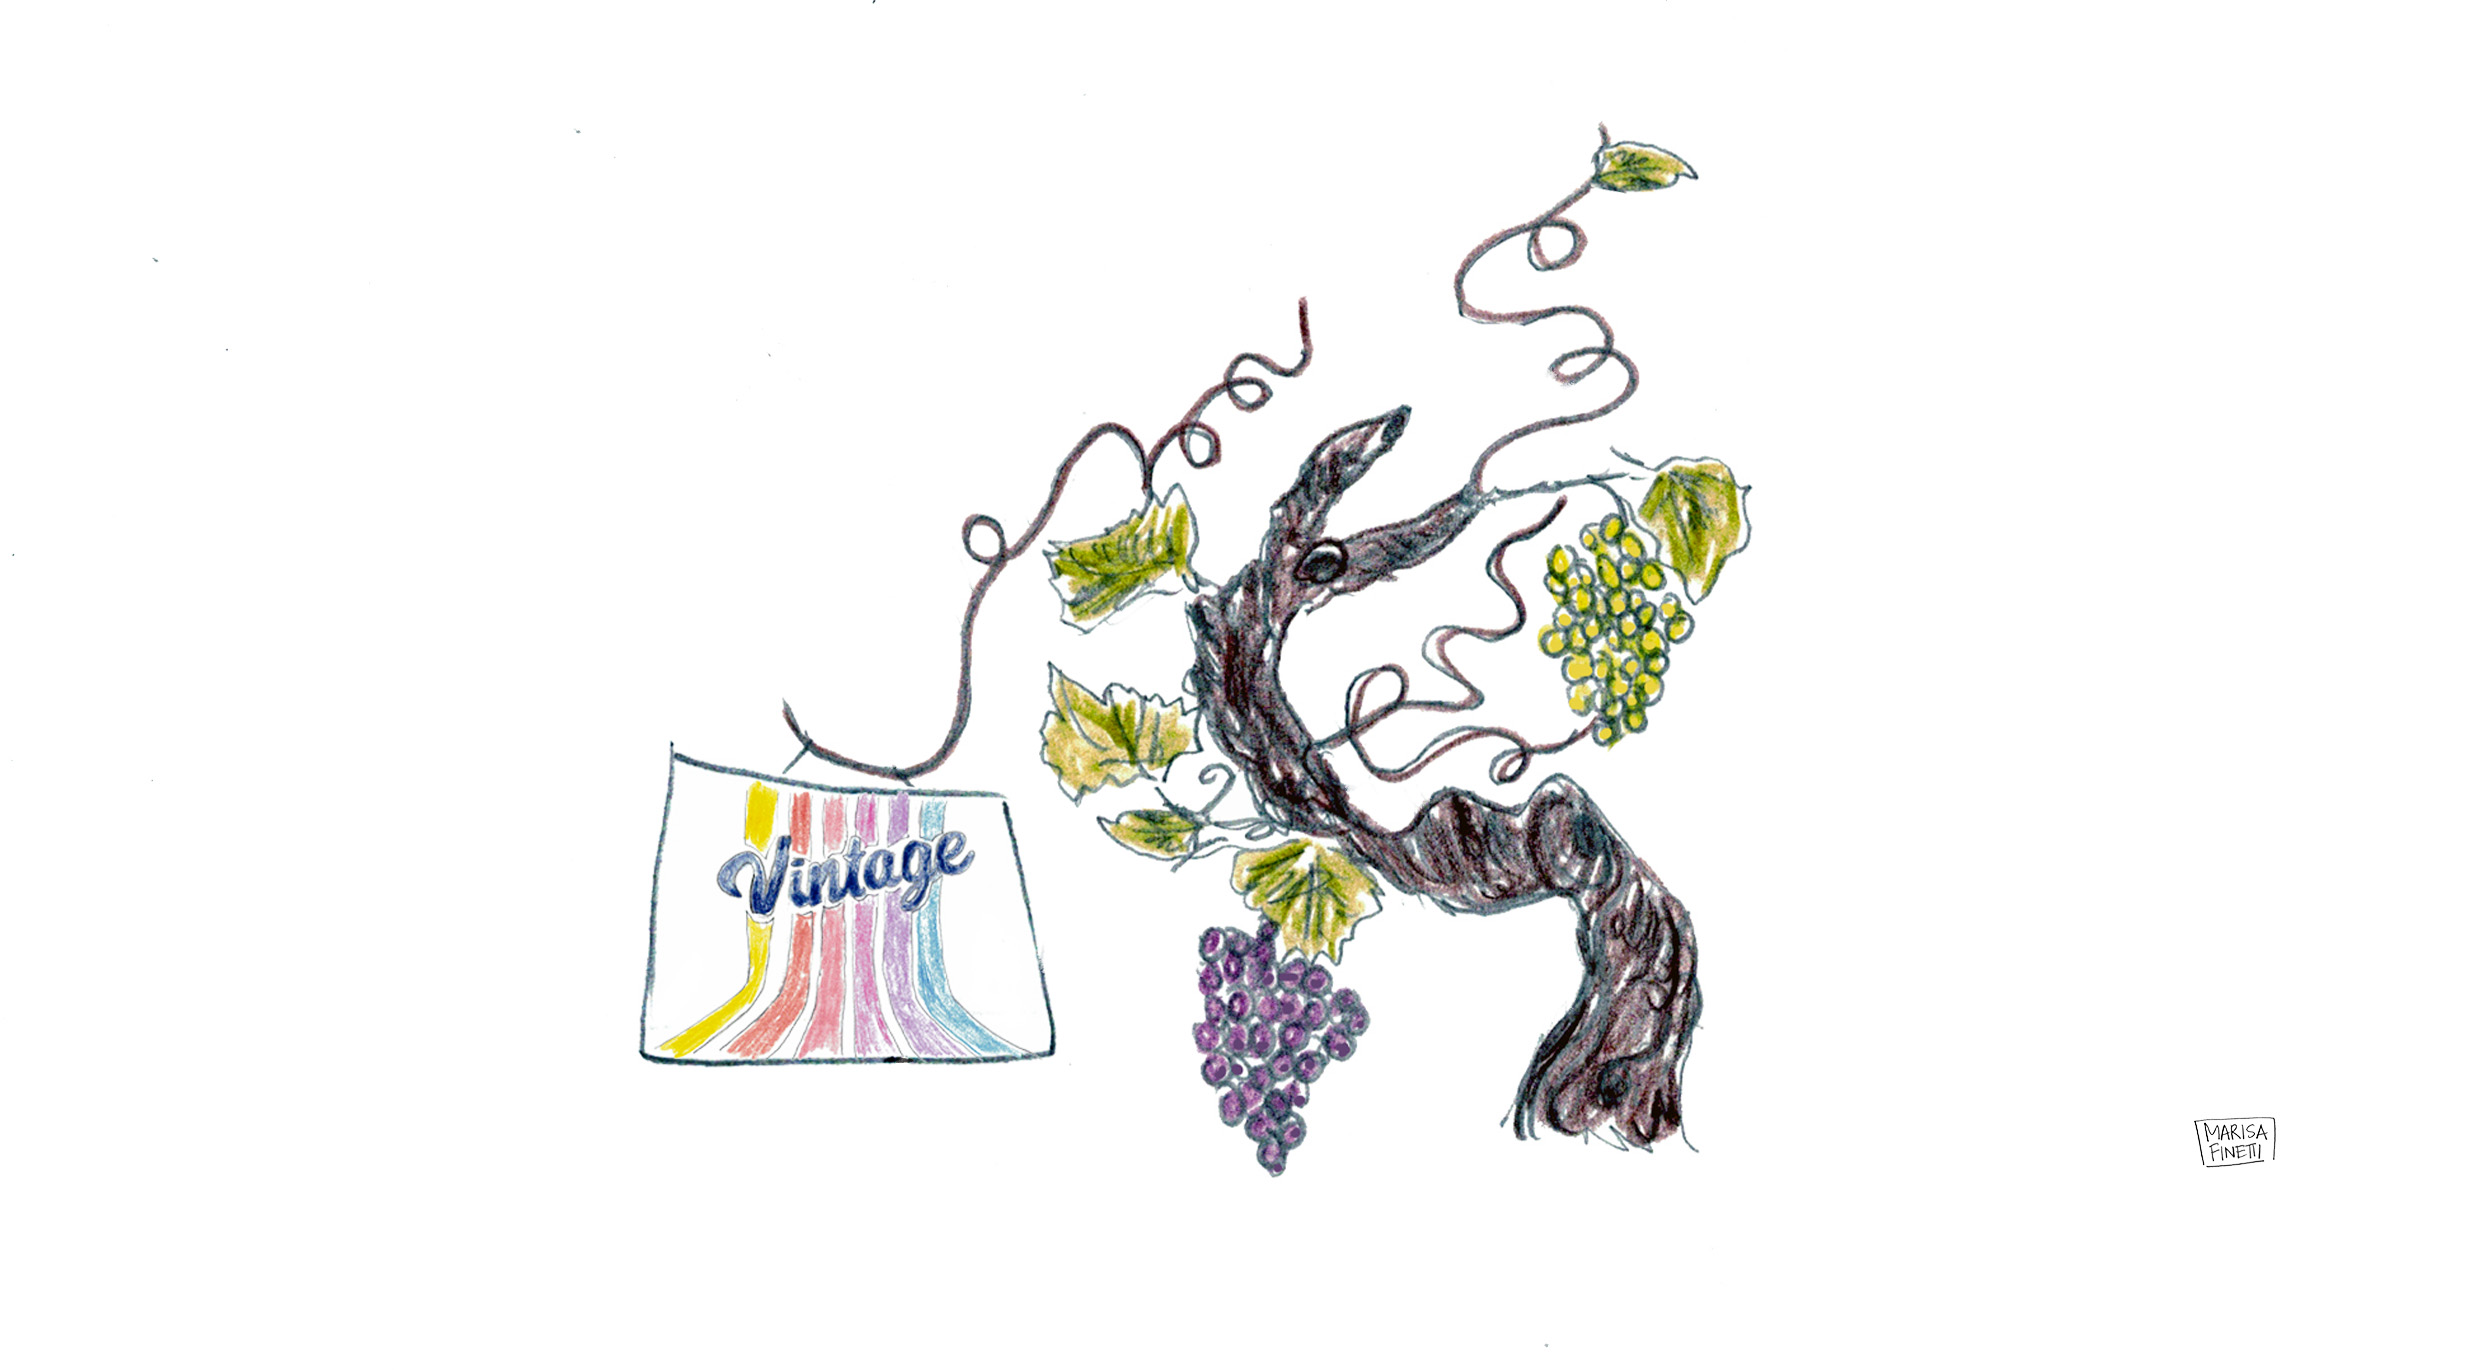 Vintage: Old-is-New-Again Vineyard Practices